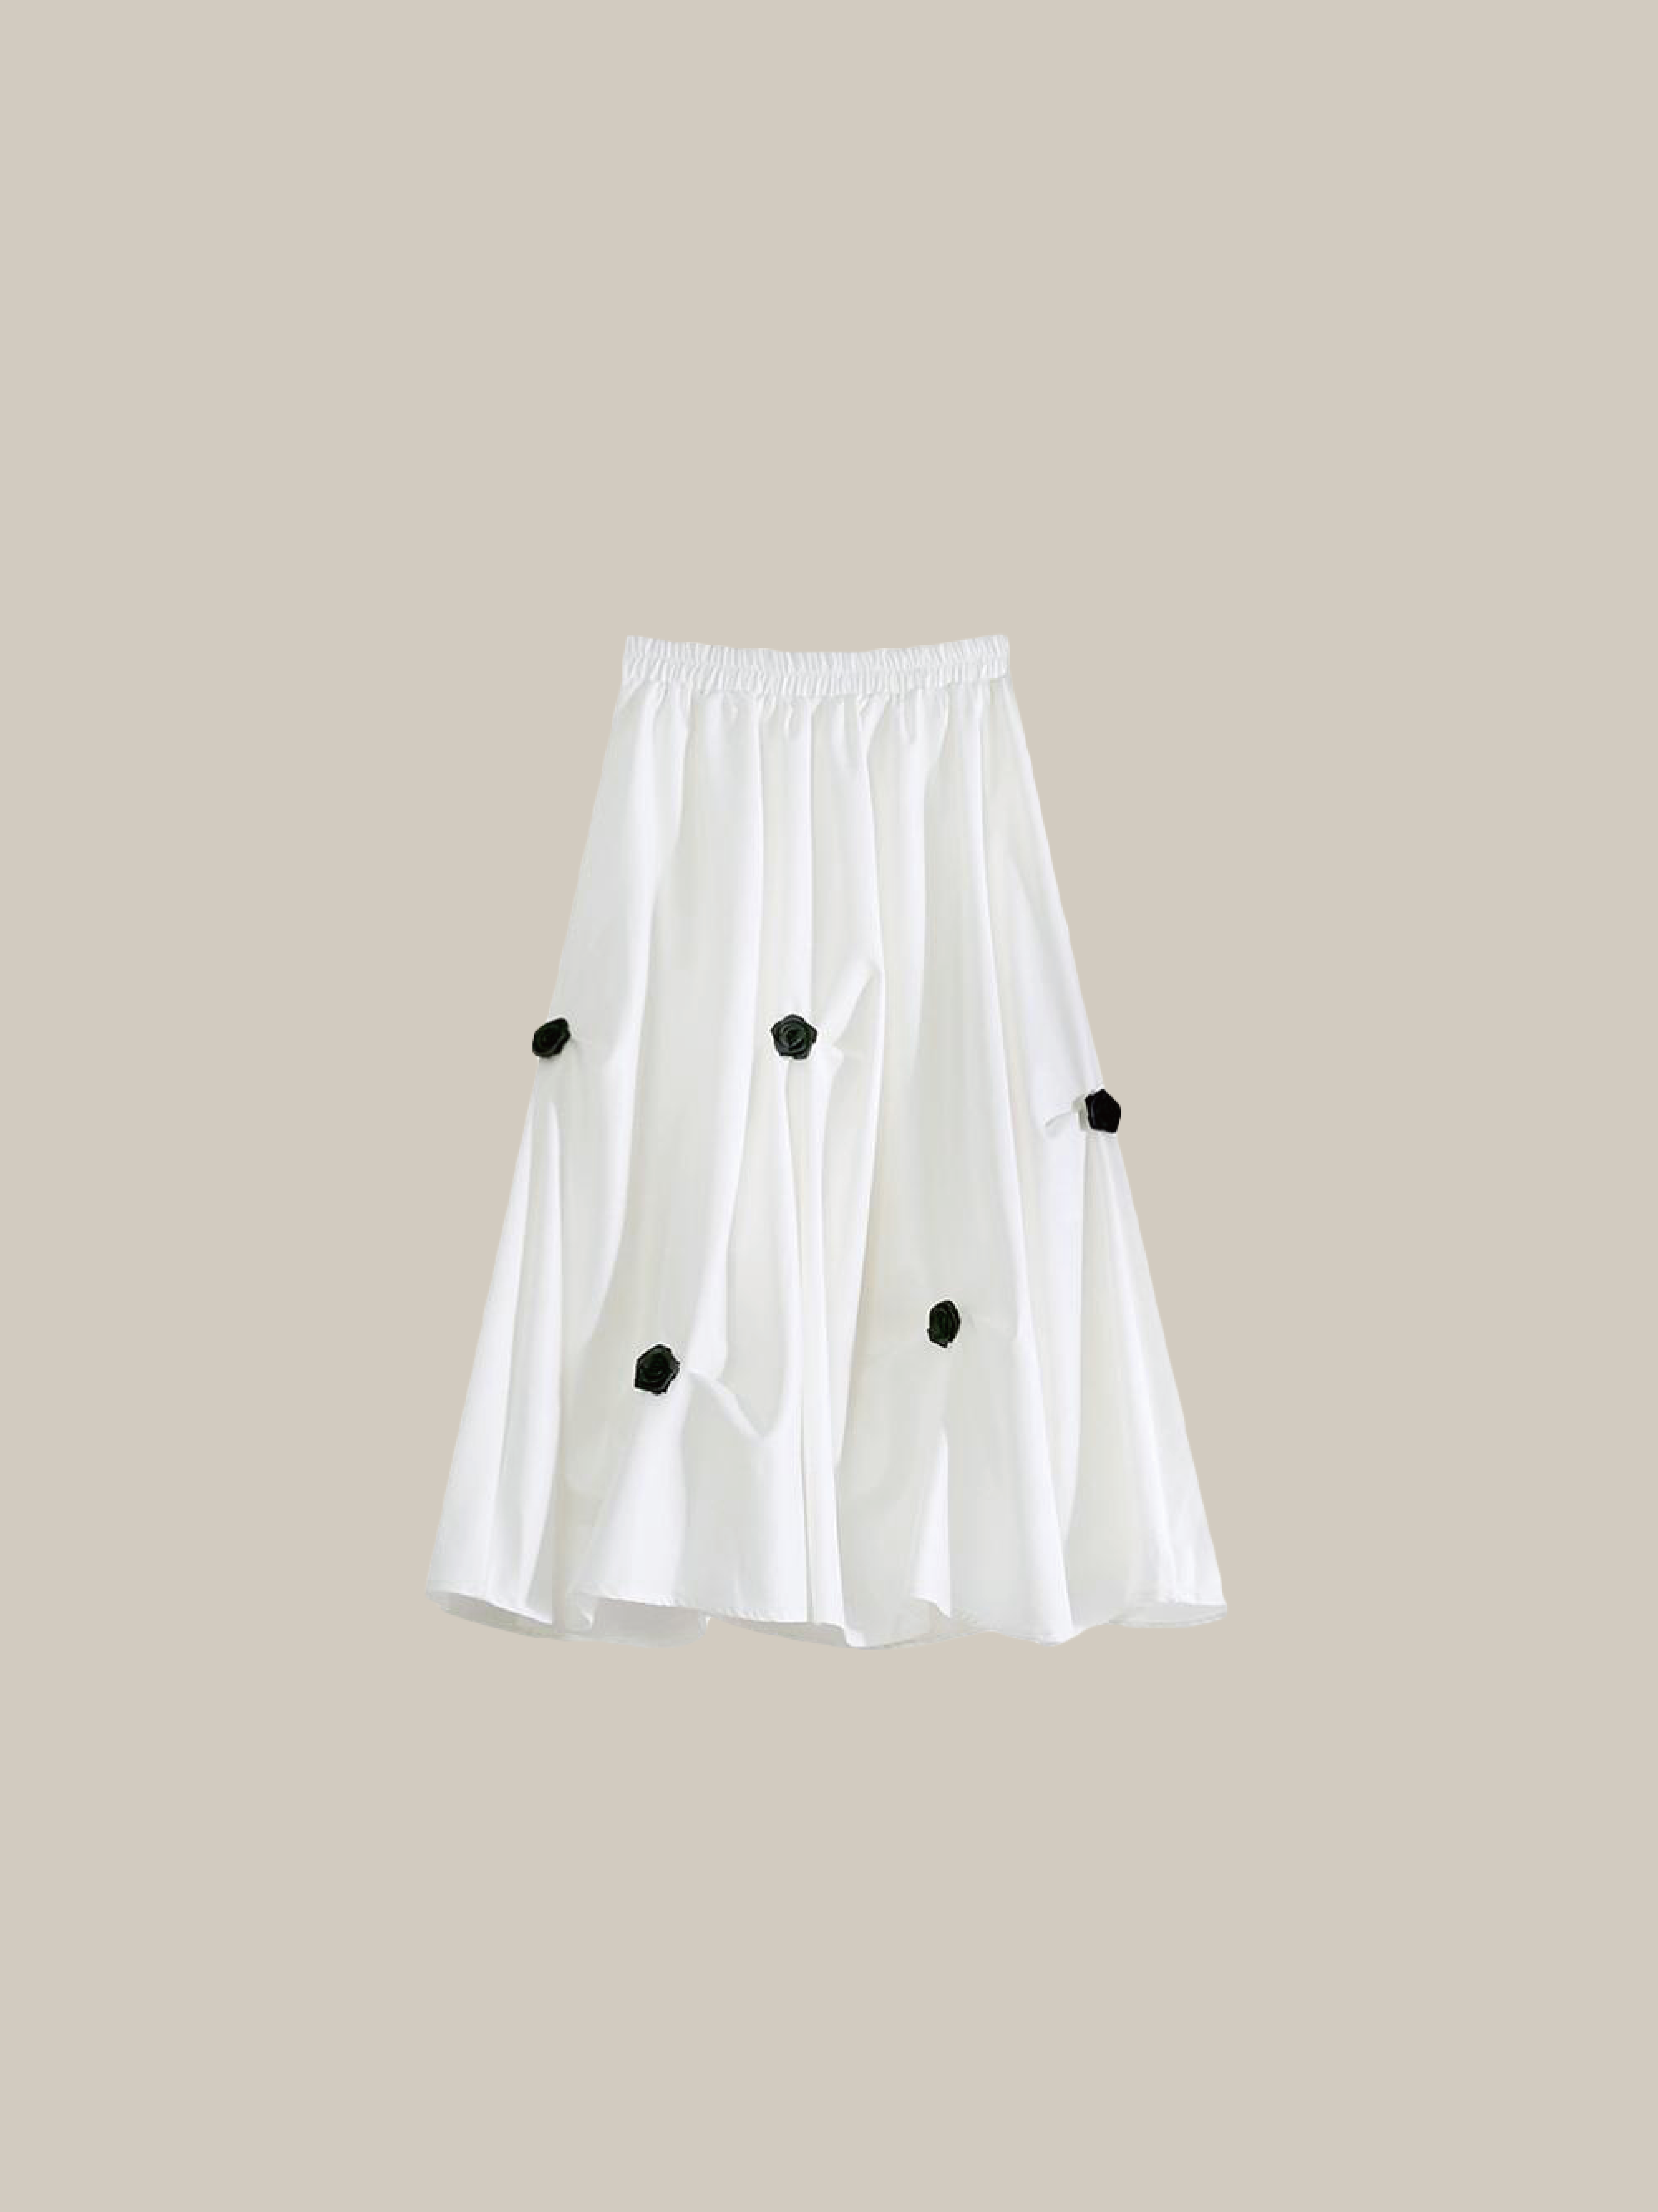 Floral Applique Pleat Skirt